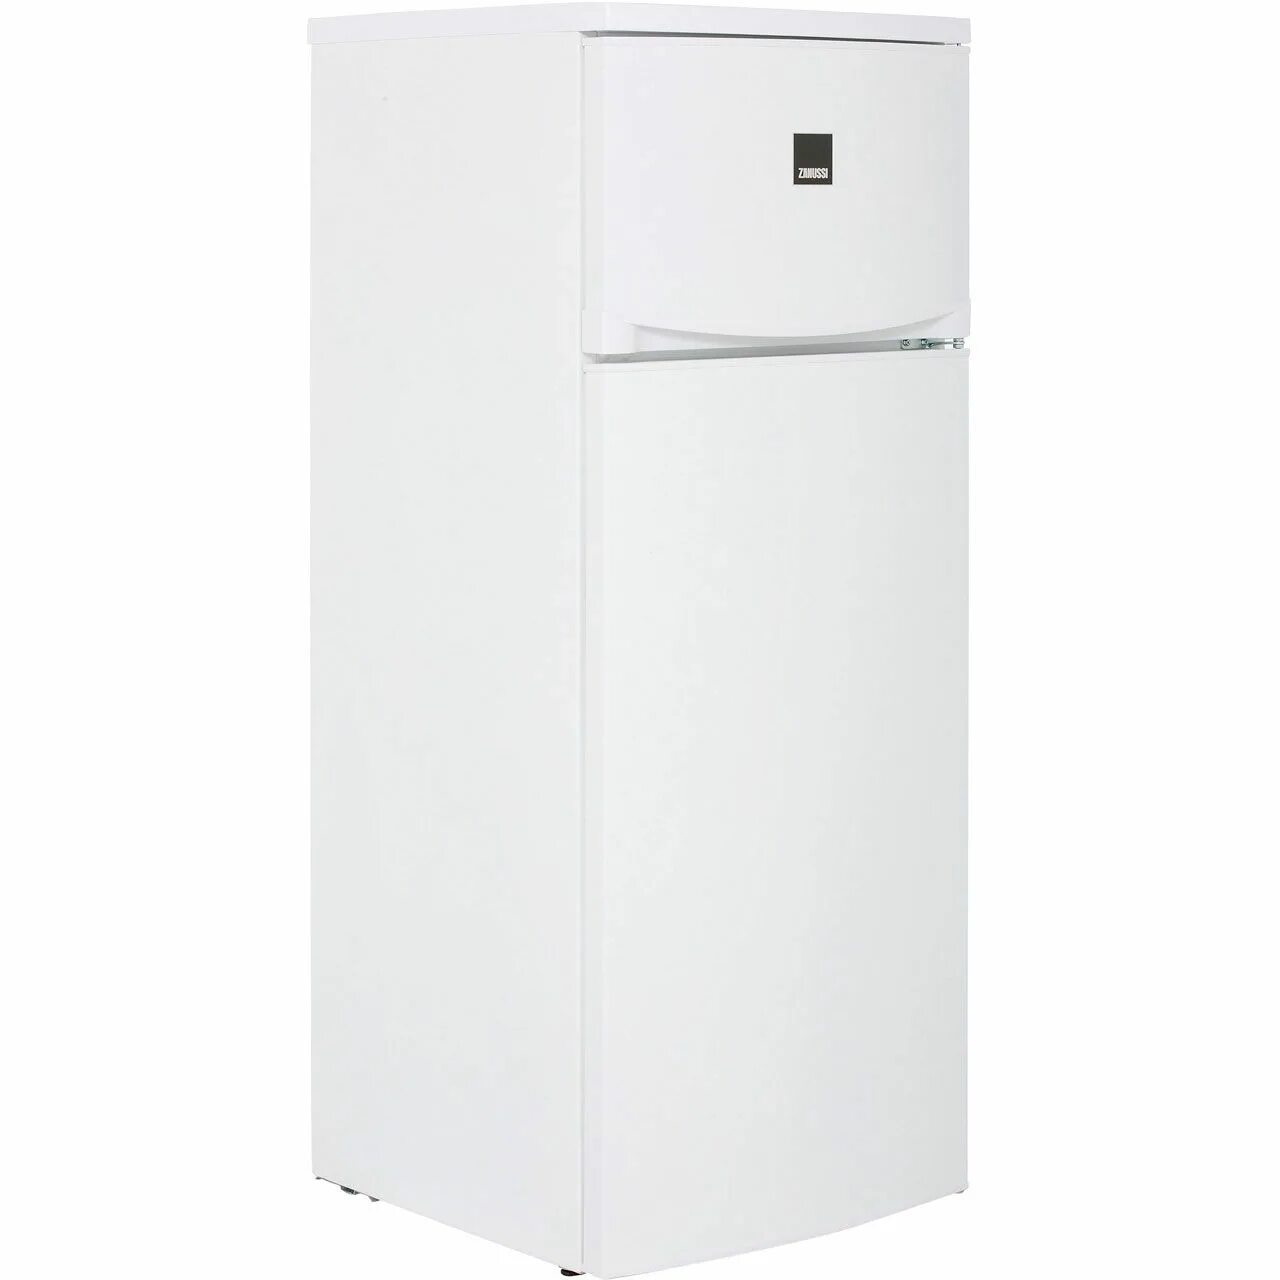 Холодильник Zanussi Zrt 18100 WA. Холодильник Zanussi Zrt 23102 WA. Холодильник Zanussi Zrt 24100 WA. Холодильник Zanussi Zrt 43200 WA.